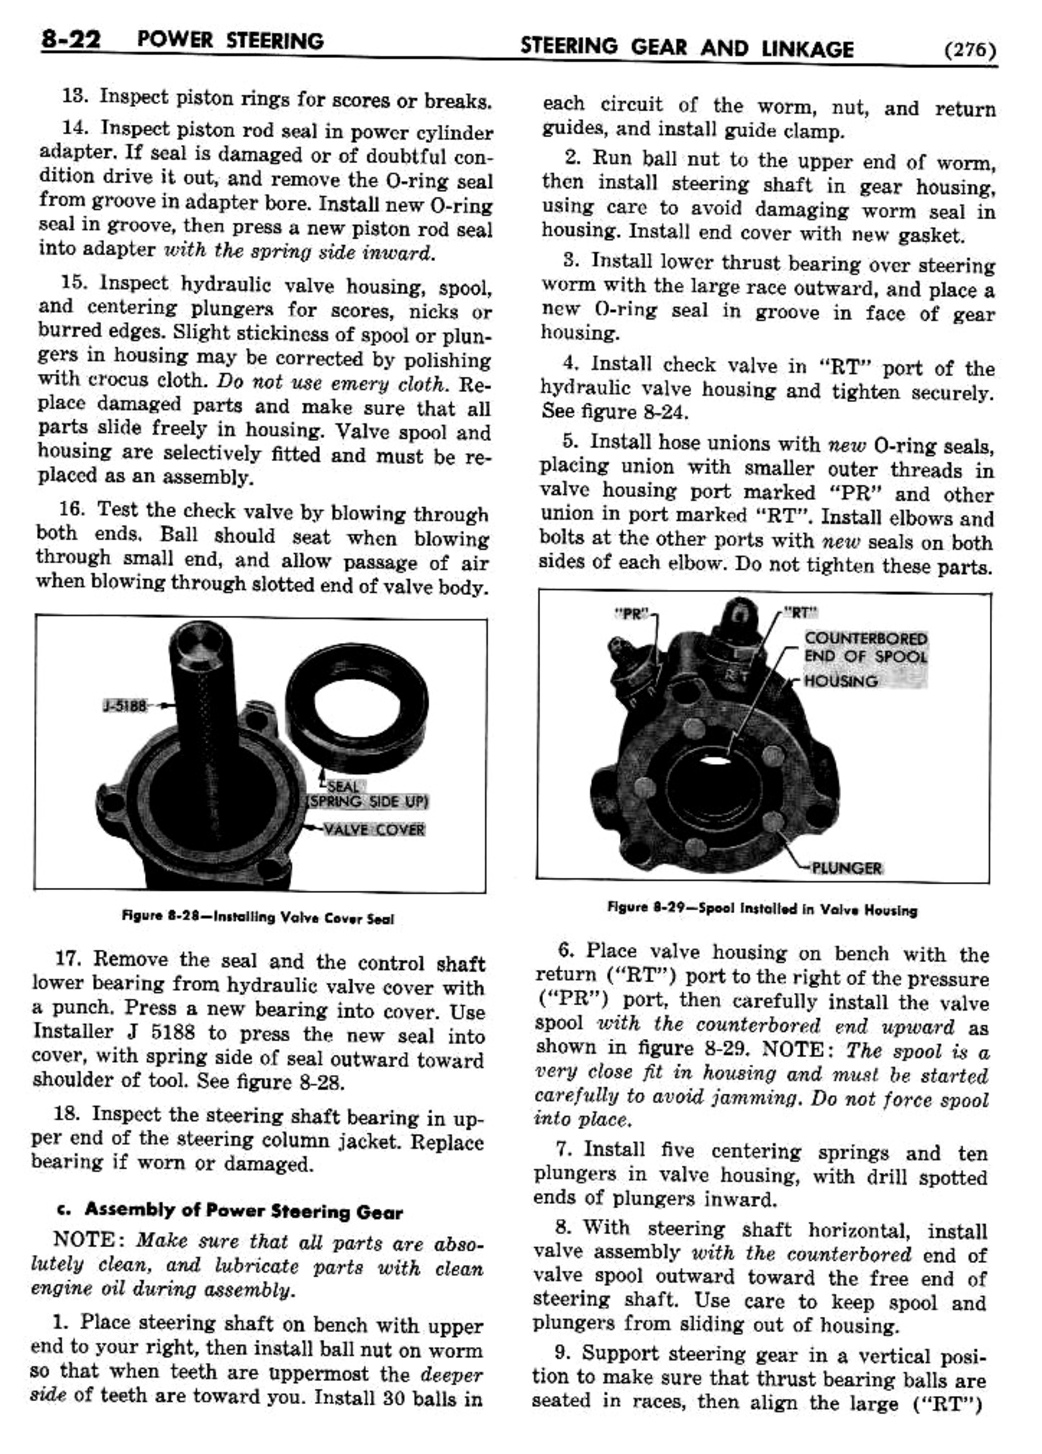 n_09 1954 Buick Shop Manual - Steering-022-022.jpg